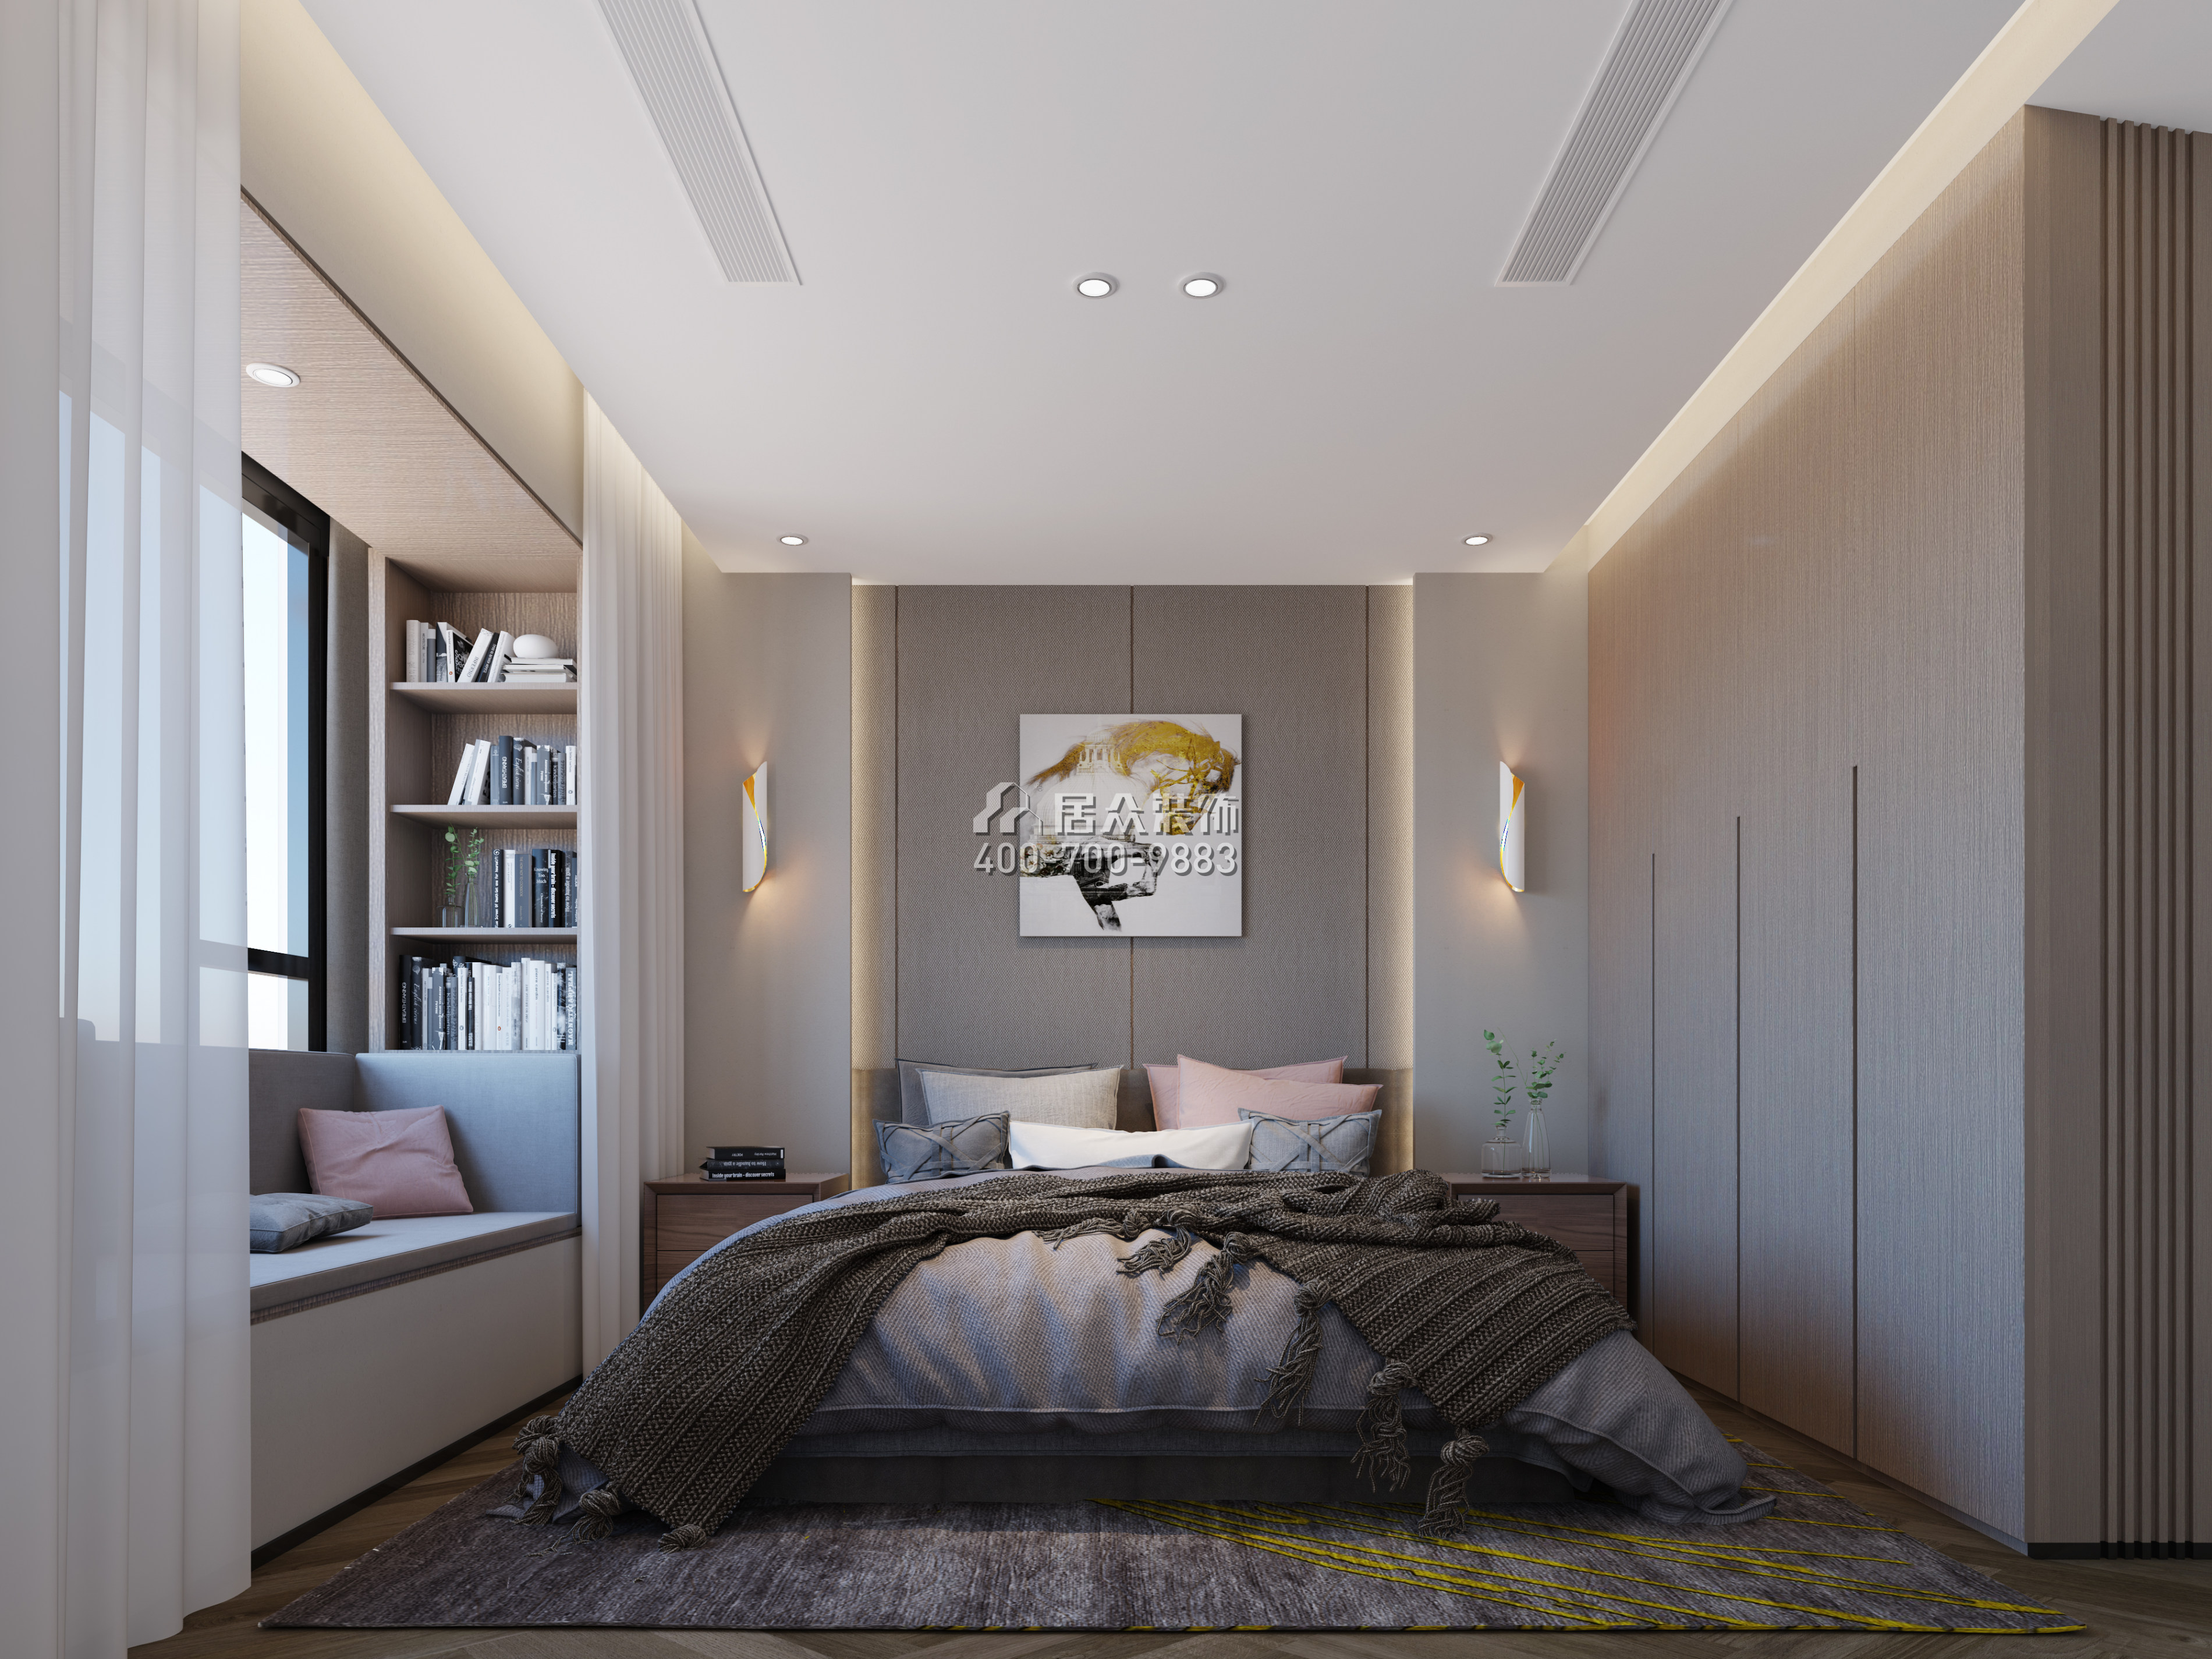 壹方中心180平方米現代簡約風格平層戶型臥室裝修效果圖